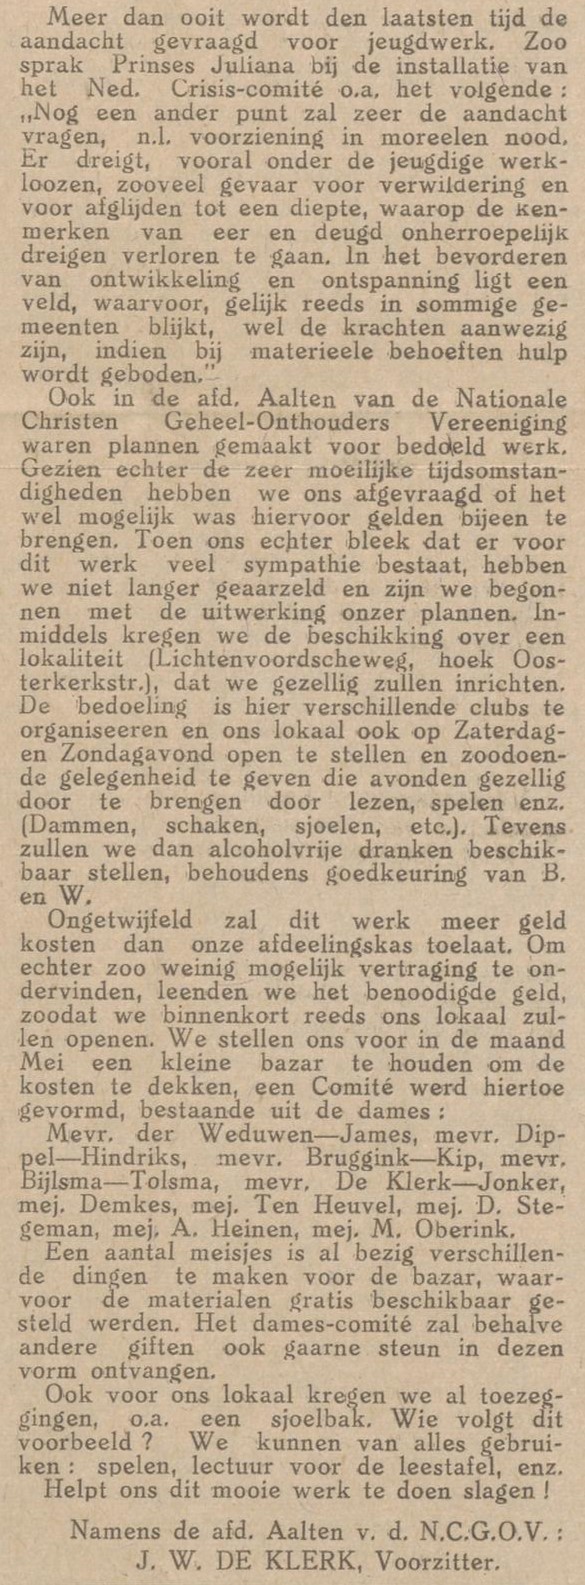 NCGOV - Aaltensche Courant, 05-02-1932